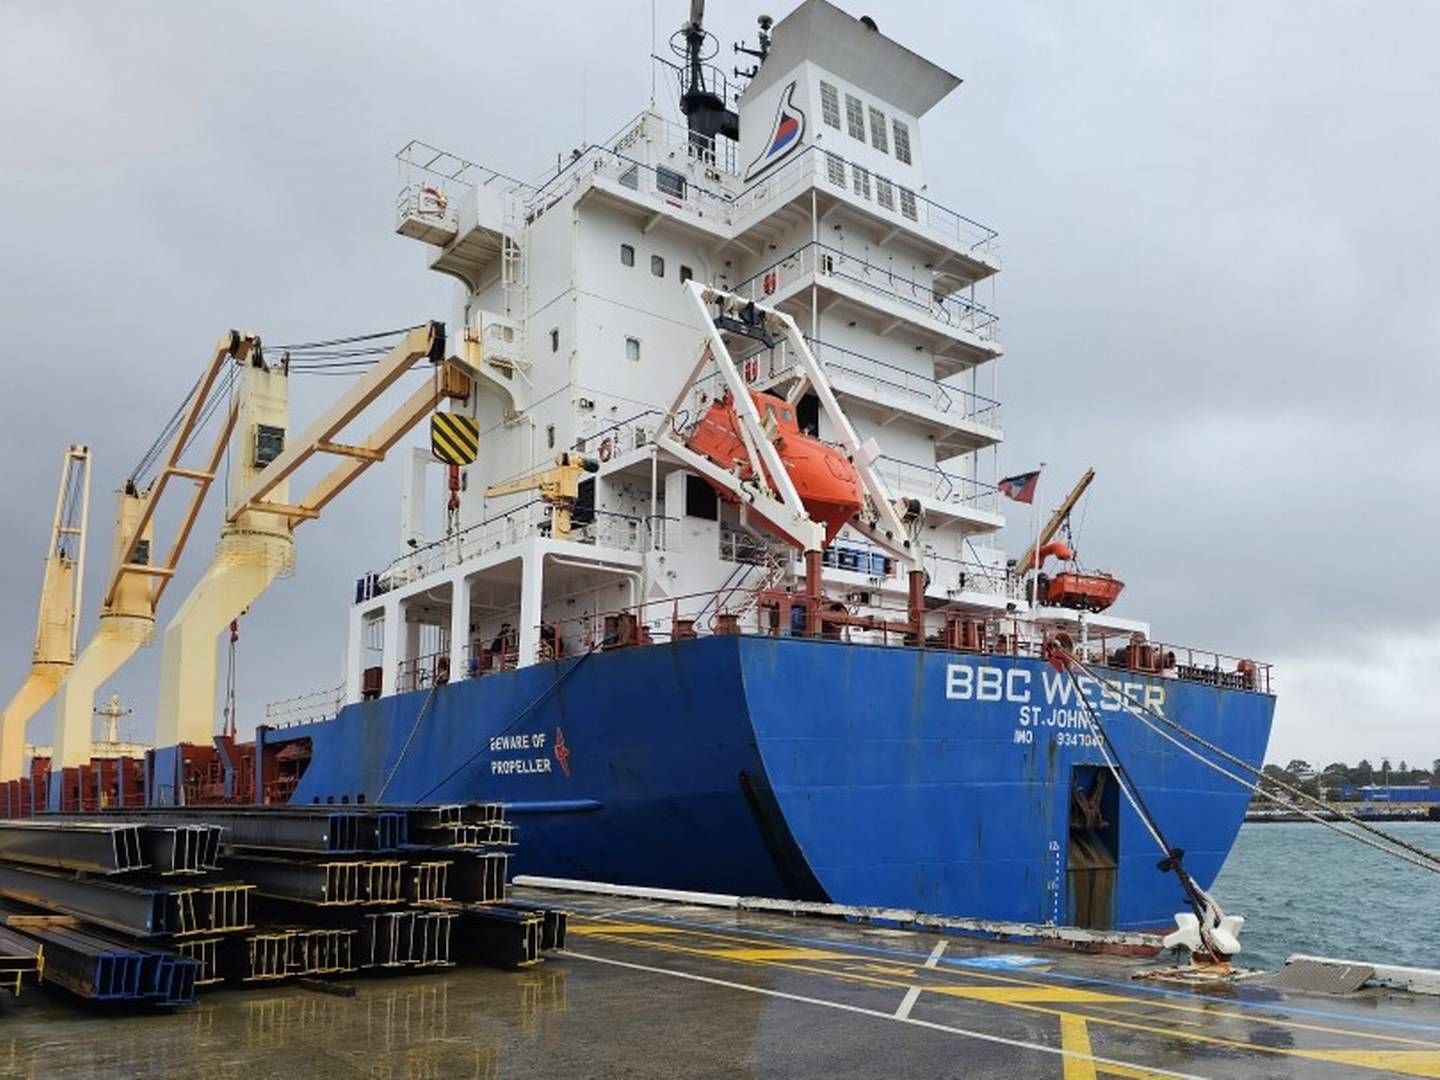 Briese-skibet BBC Weser, som australske myndigheder i juni forbød sejlads i australsk farvand i 90 dage, fordi skibet ifølge myndighederne ikke var sødygtigt. | Foto: Amsa